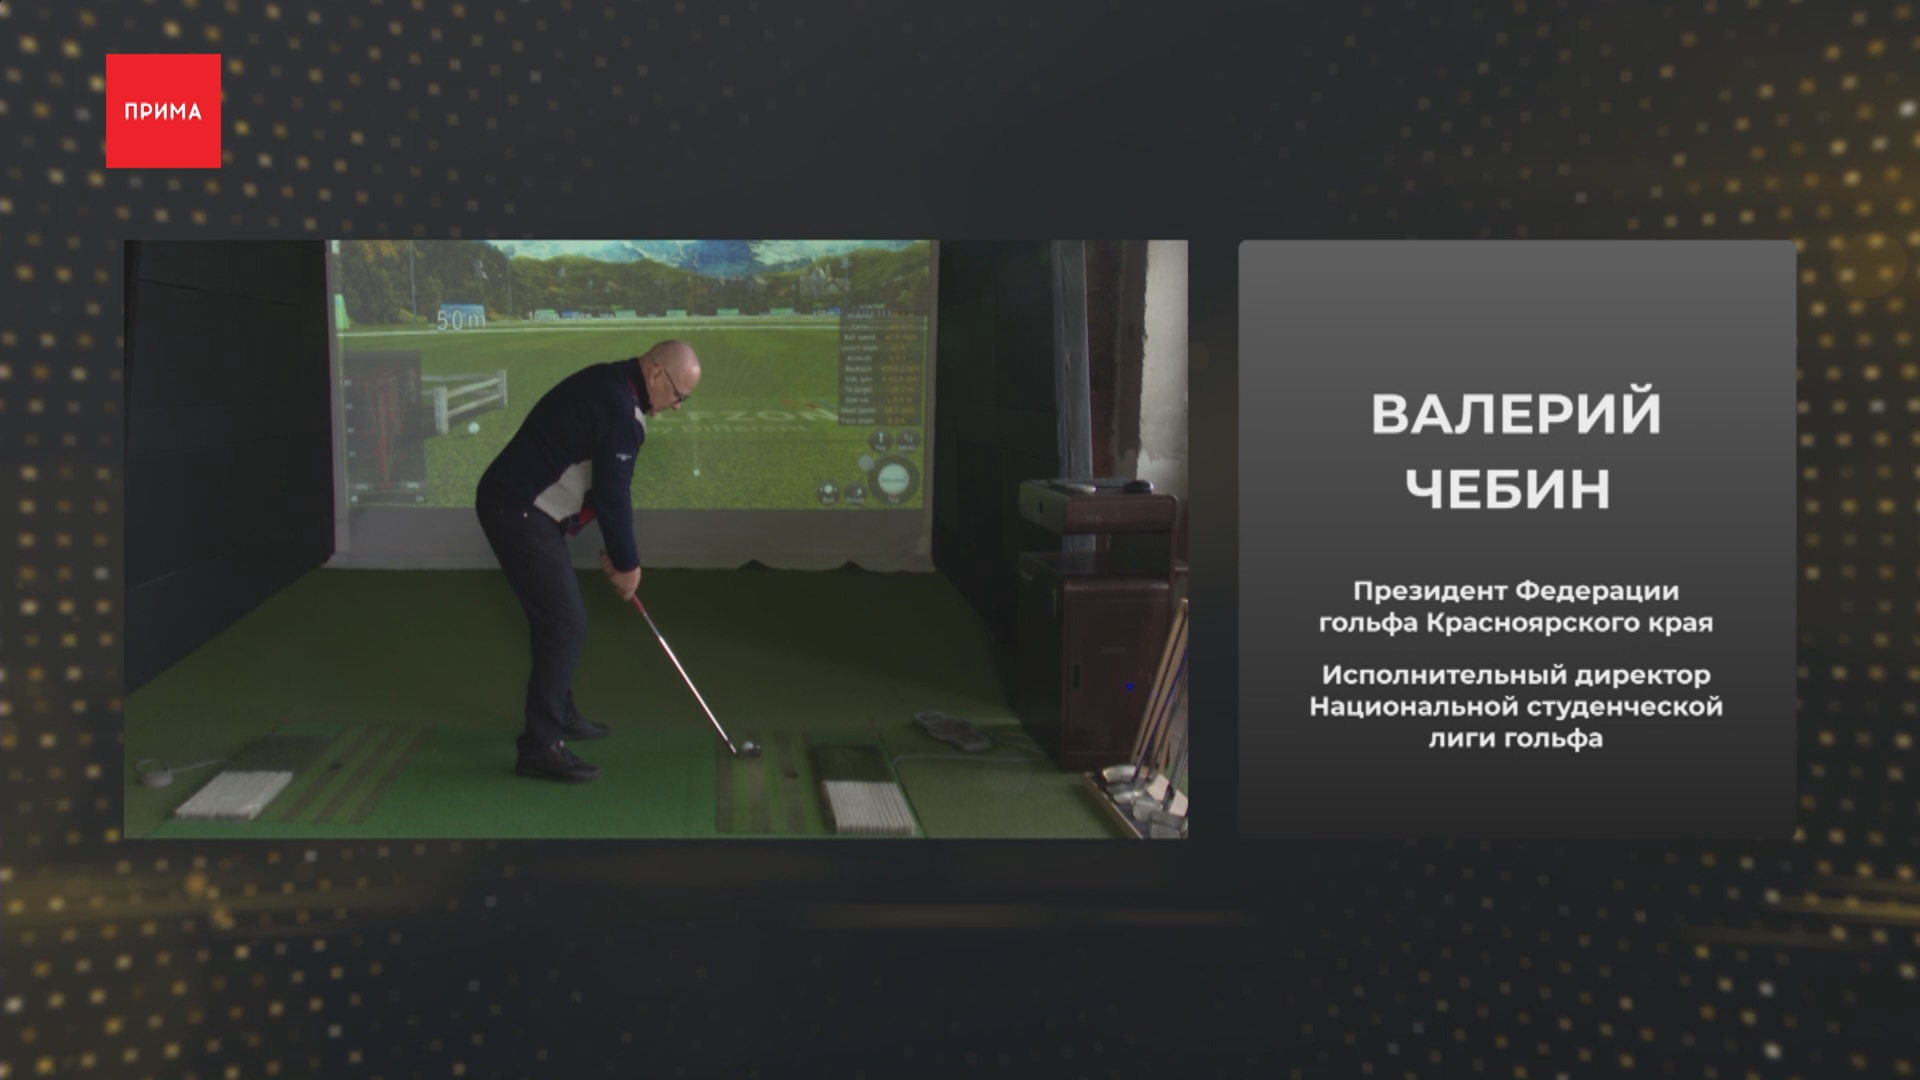 «Деловые клюшки»: когда в Красноярске заработает гольф-поле?